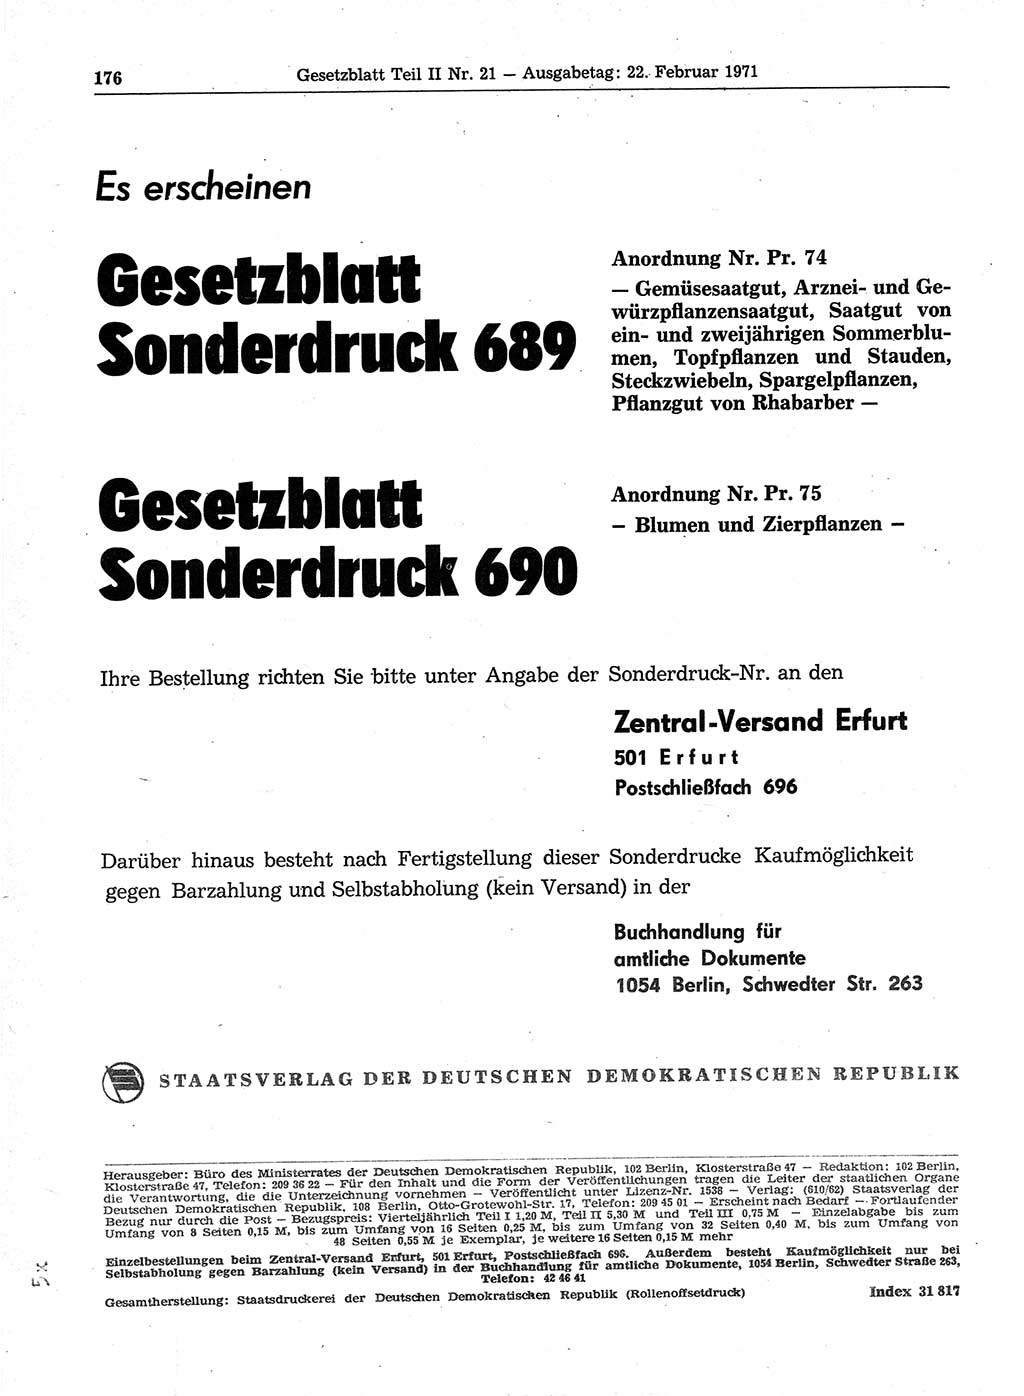 Gesetzblatt (GBl.) der Deutschen Demokratischen Republik (DDR) Teil ⅠⅠ 1971, Seite 176 (GBl. DDR ⅠⅠ 1971, S. 176)